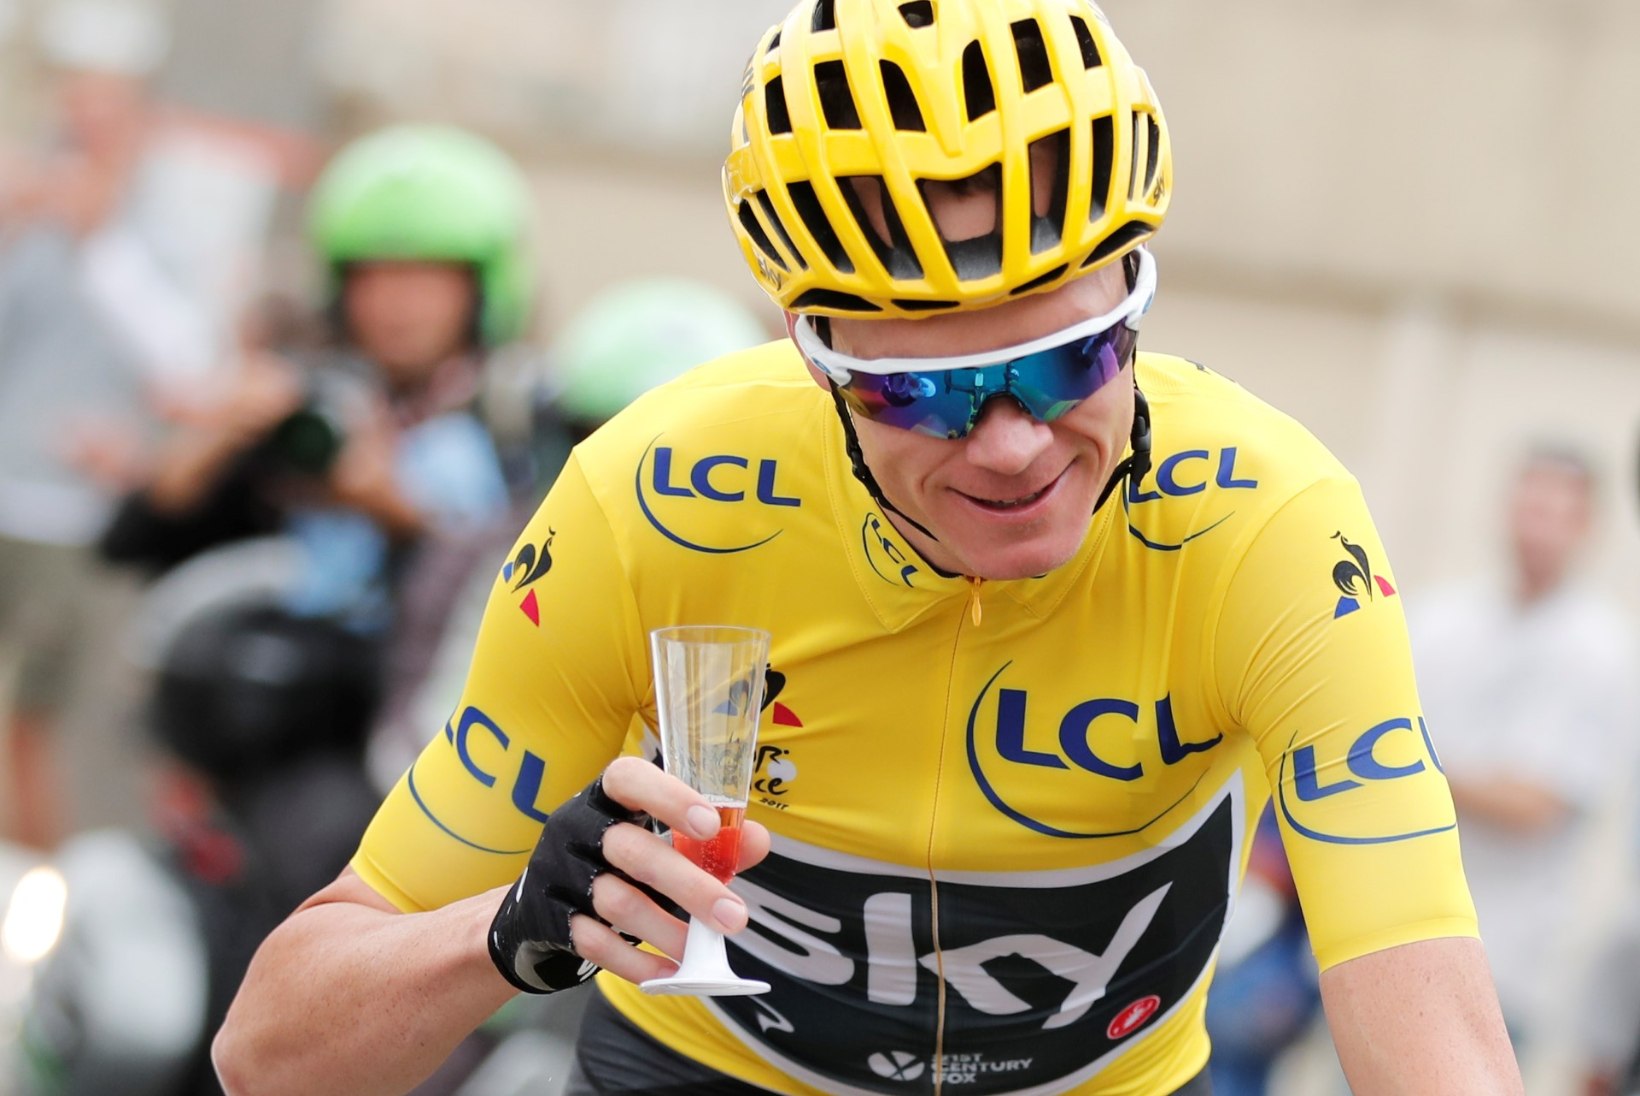 PATISEIS! Tour de France'i korraldajad ei saa dopingukahtlusega Froome'l startimist keelata